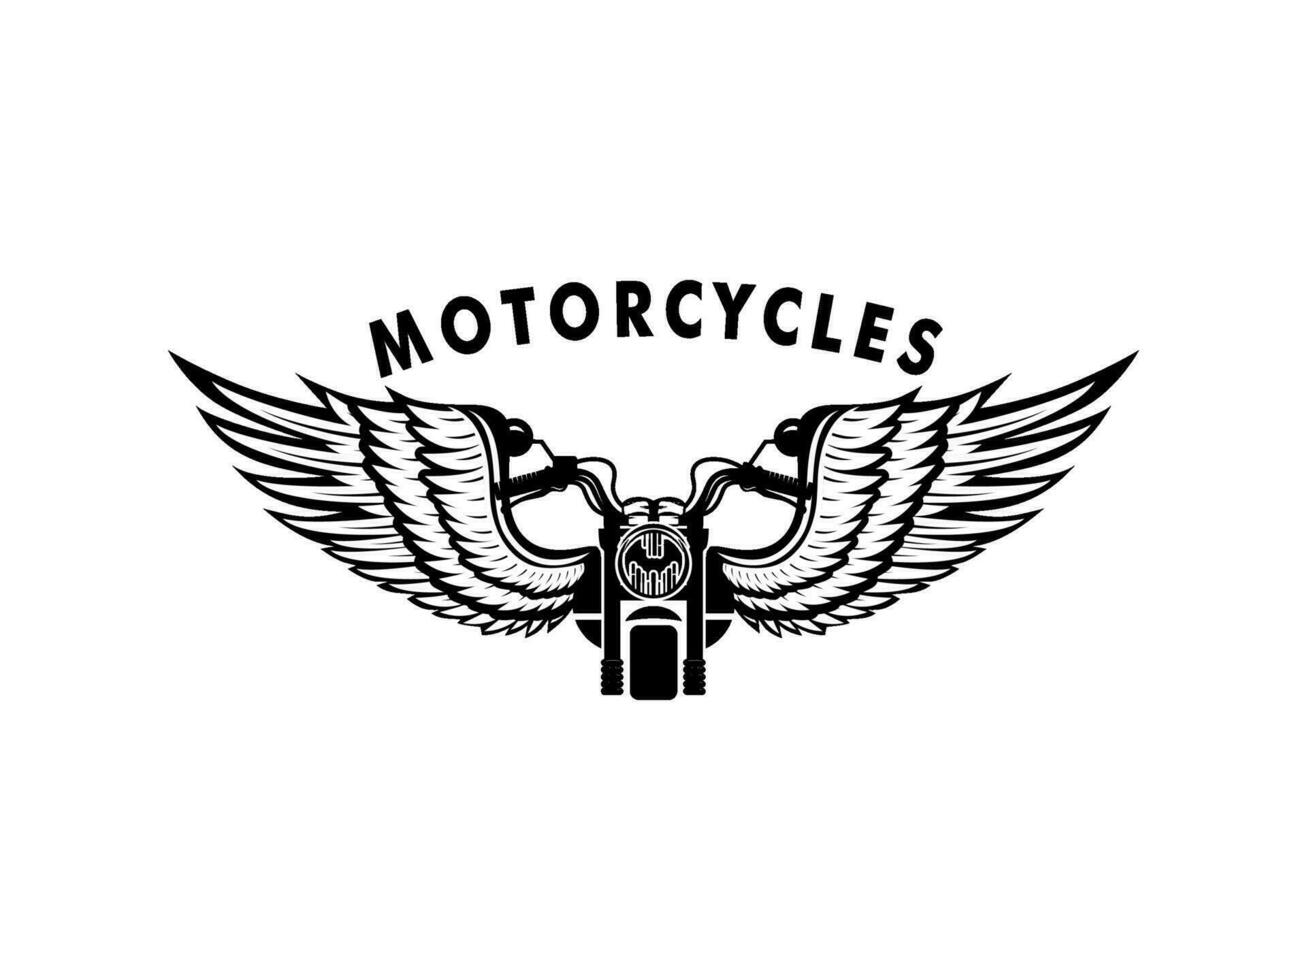 motorfiets wijnoogst met vleugel logo concept in zwart en wit kleuren geïsoleerd vector illustratie